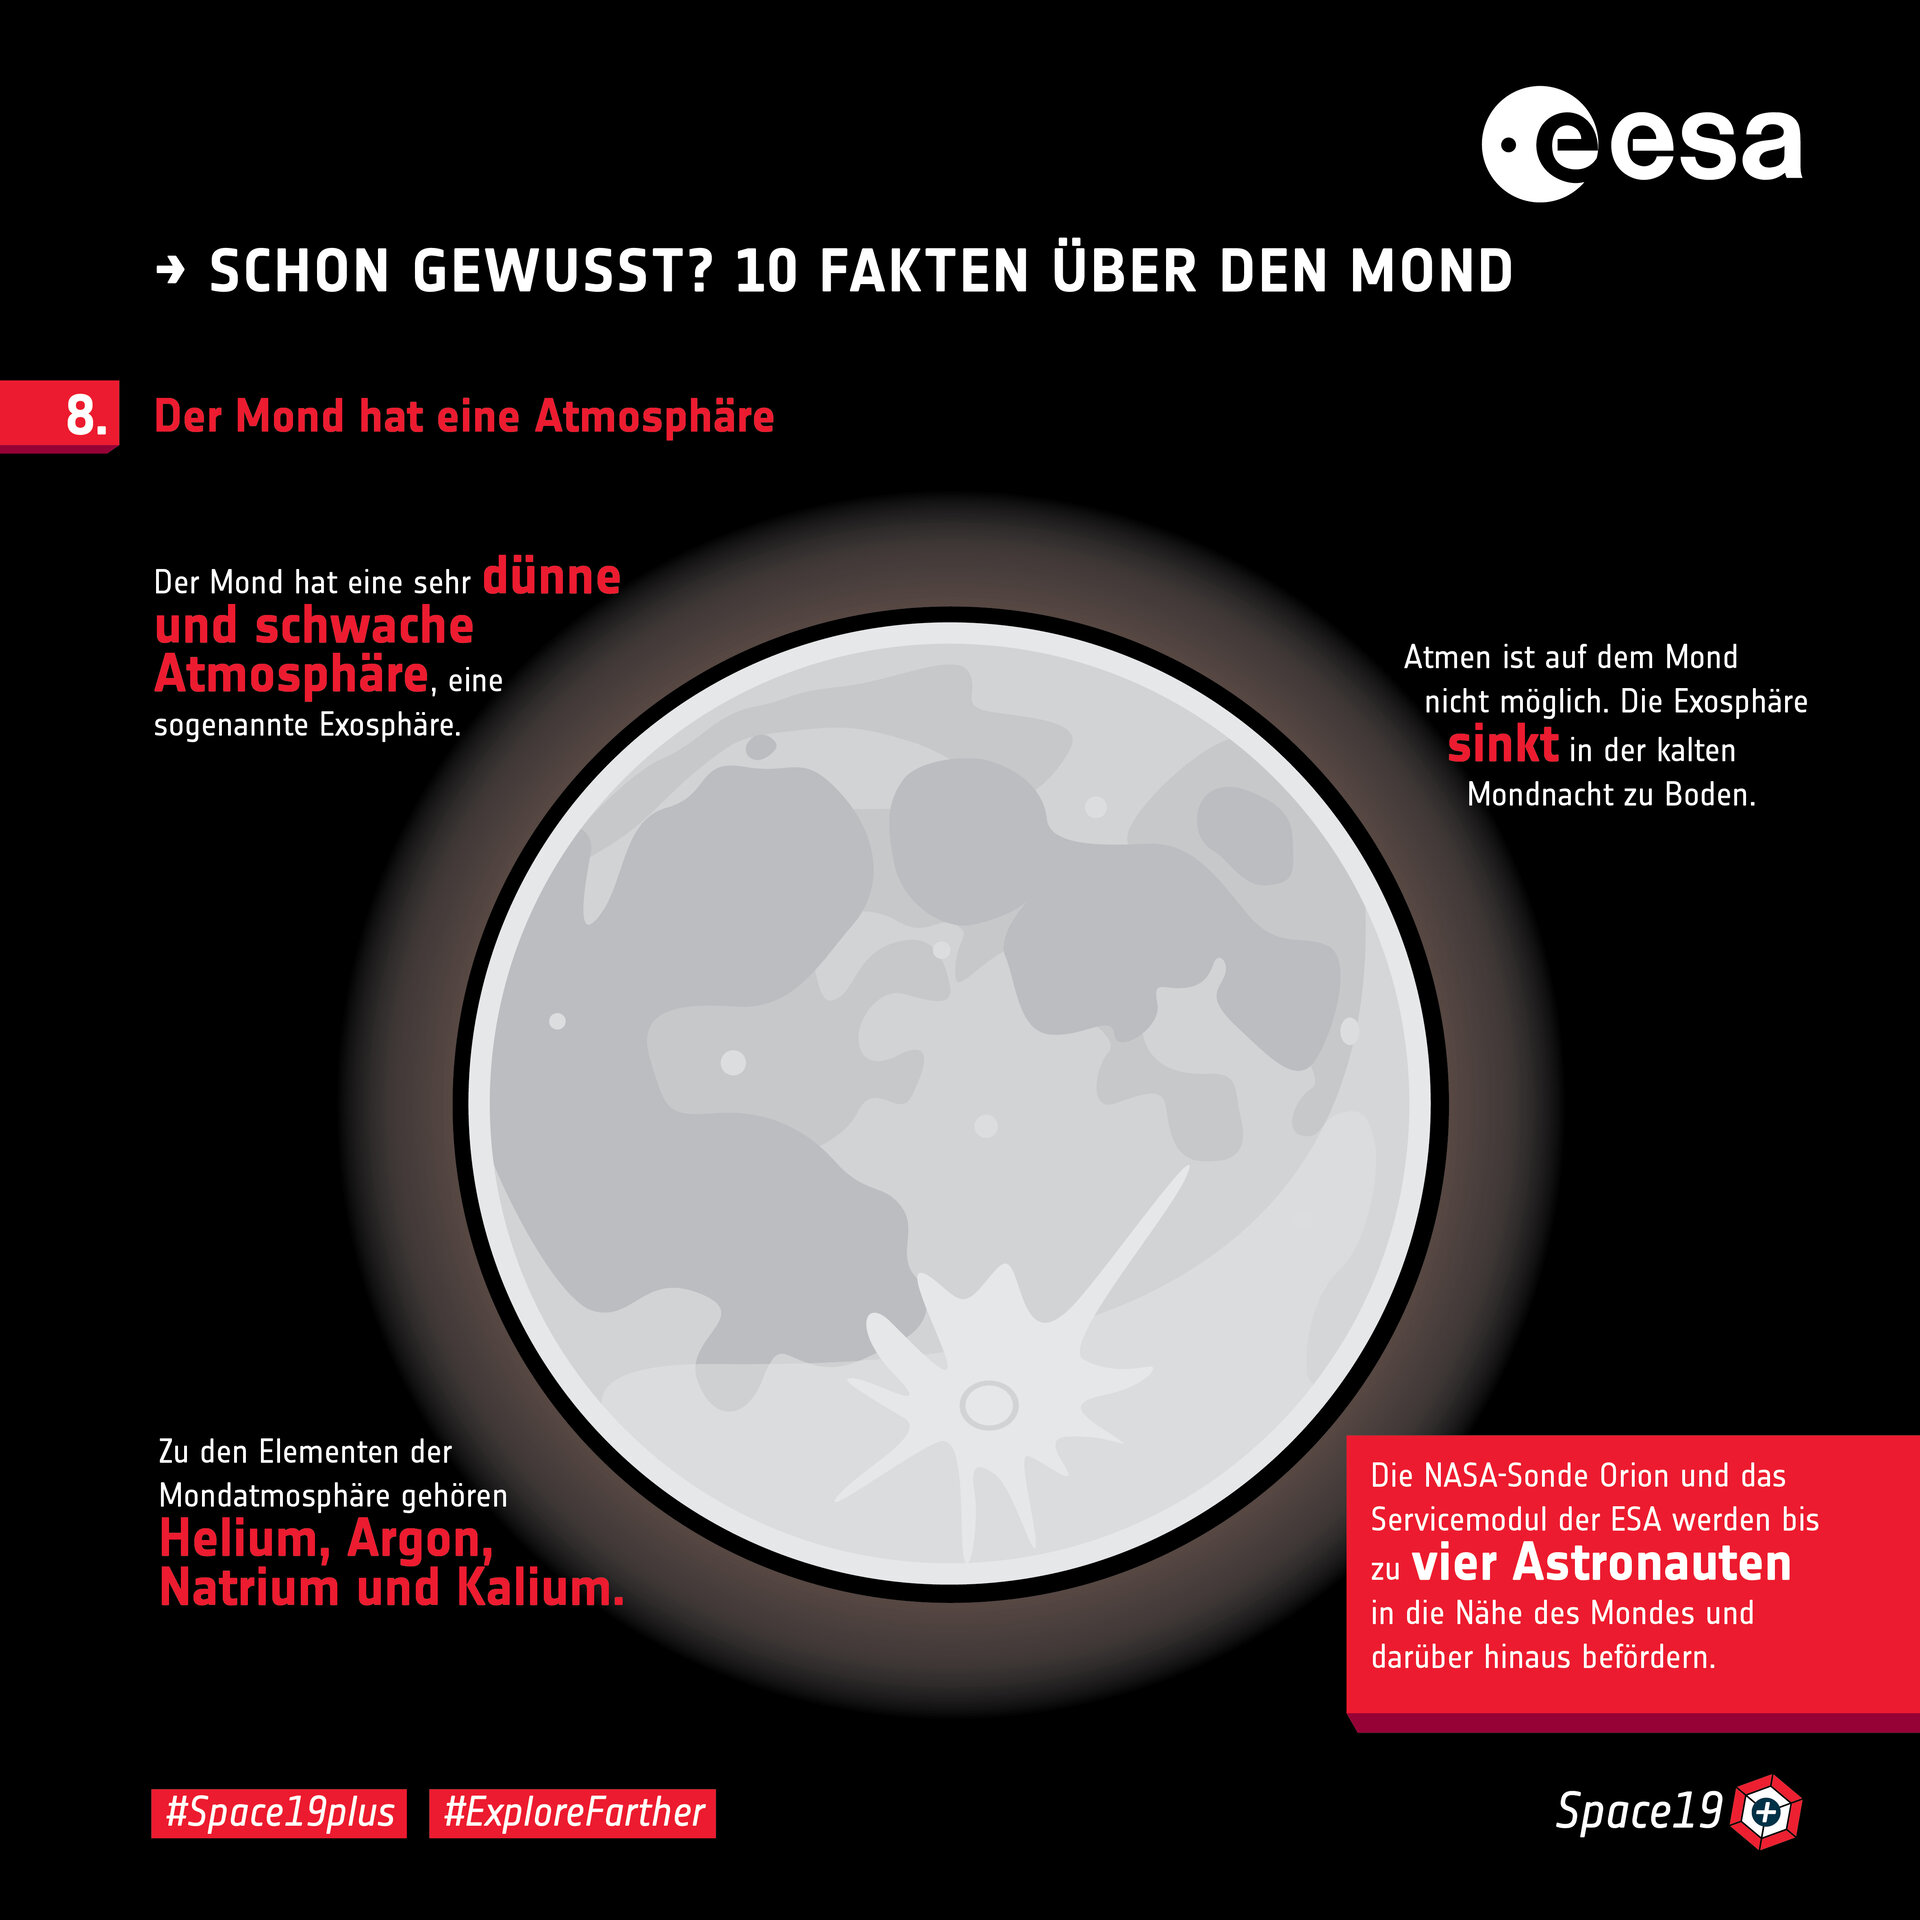 Schon gewusst? 10 Fakten über den Mond: 8. Atmosphäre